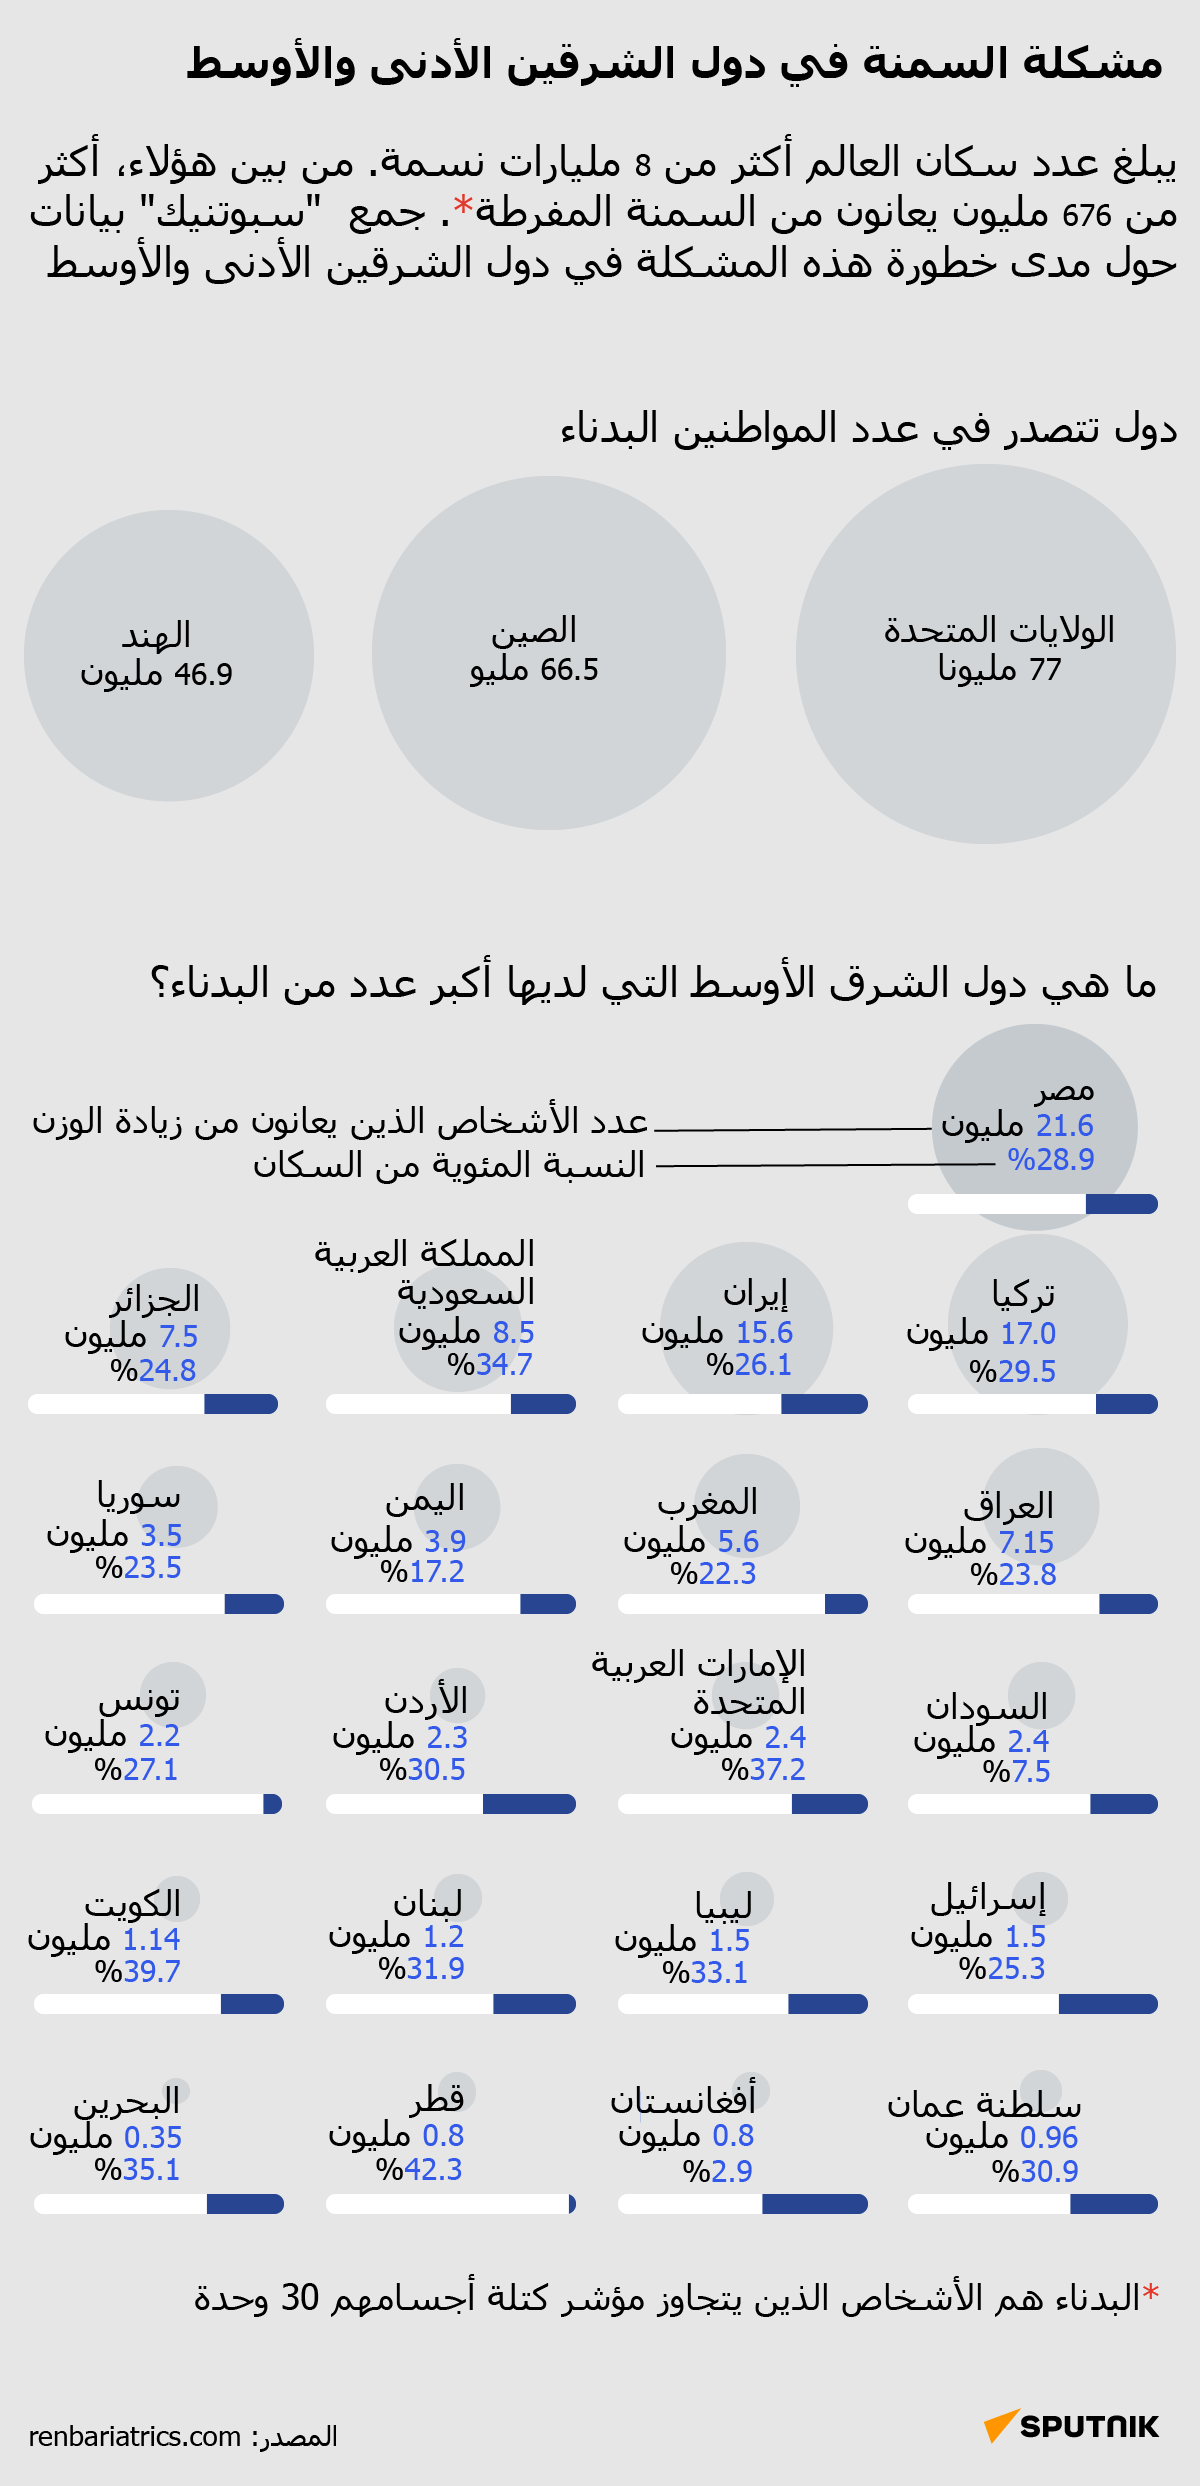 مشكلة السمنة في دول الشرقين الأدنى والأوسط - سبوتنيك عربي